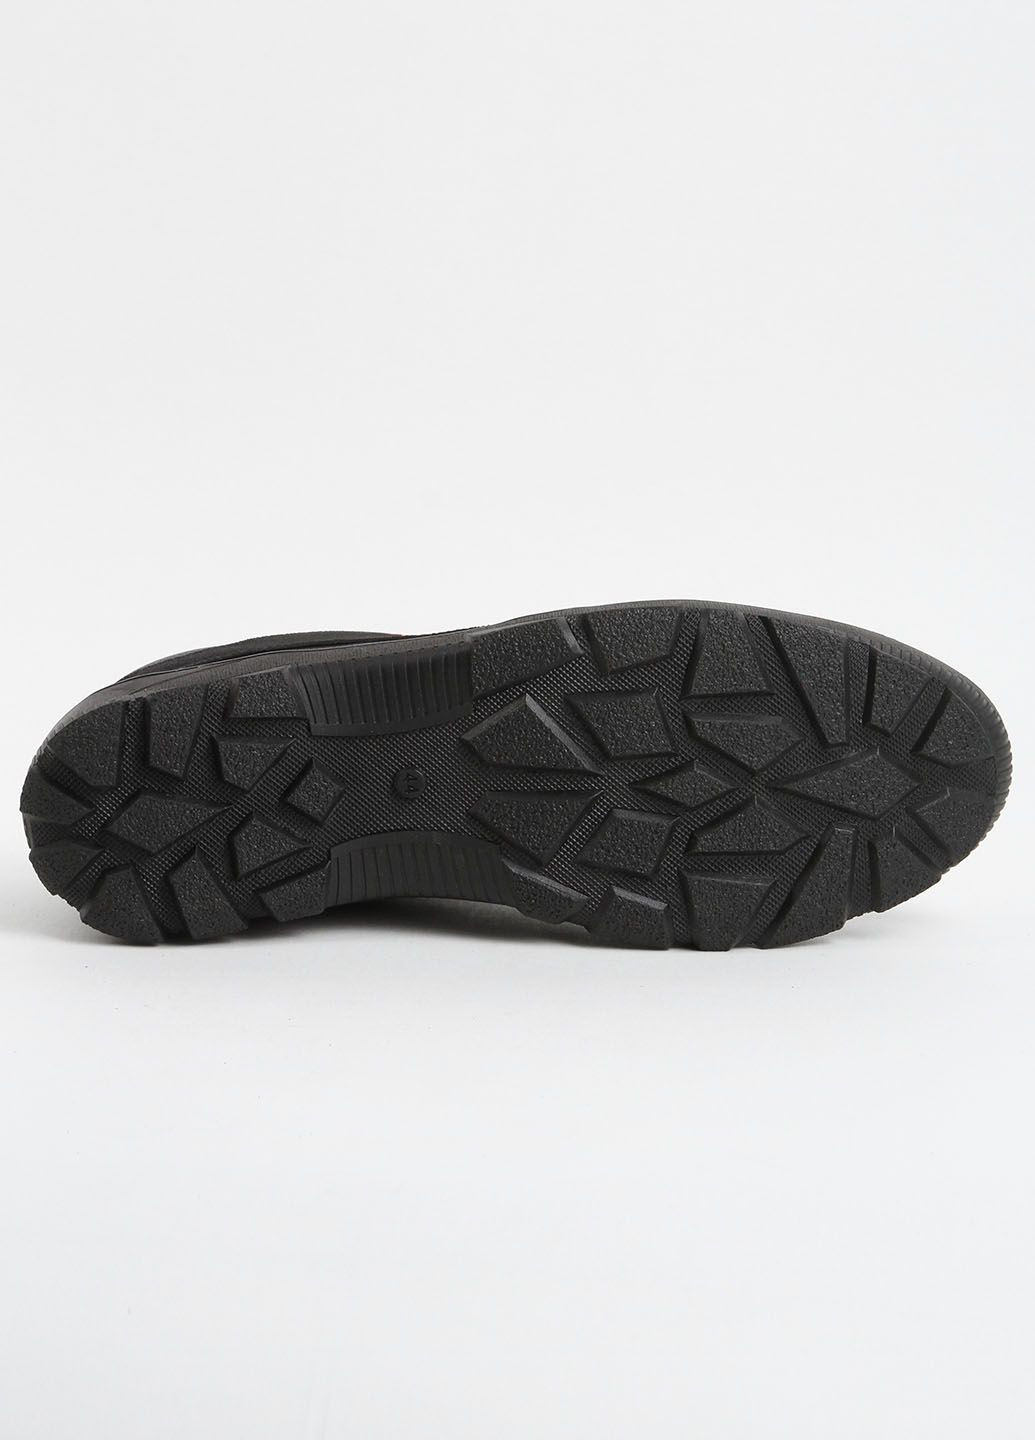 Черные кроссовки мужские кожаные 339502 Power